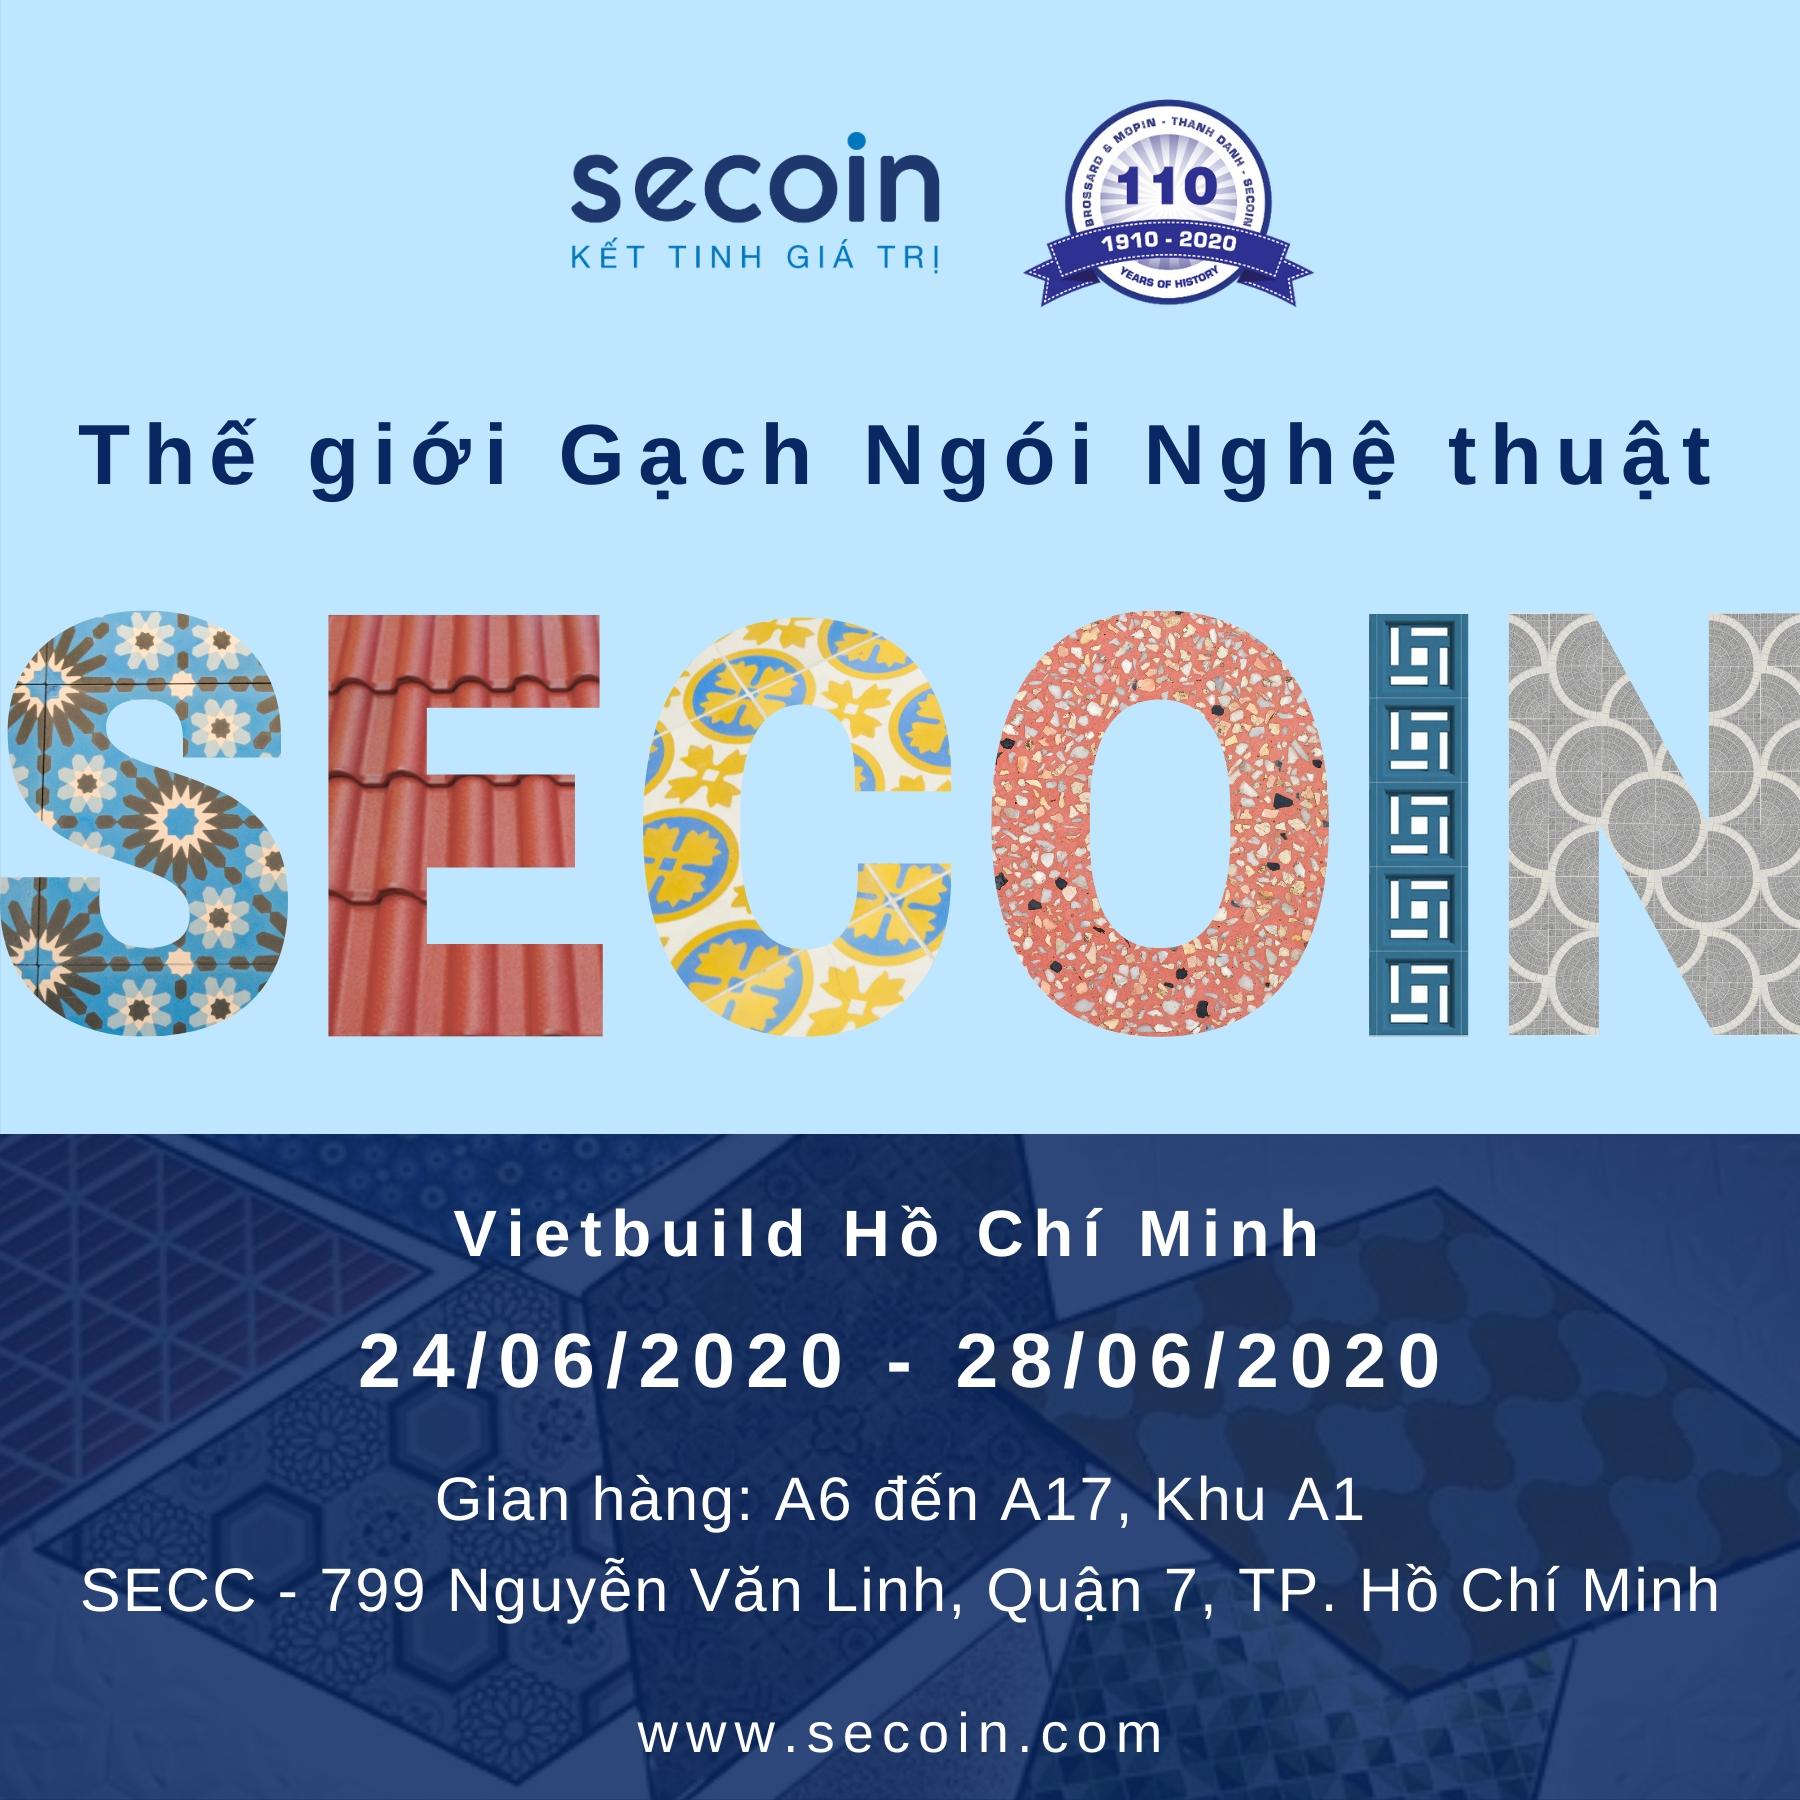 Thế giới Gạch ngói nghệ thuật Secoin tại Hội chợ Vietbuild Hồ Chí Minh 06/2020